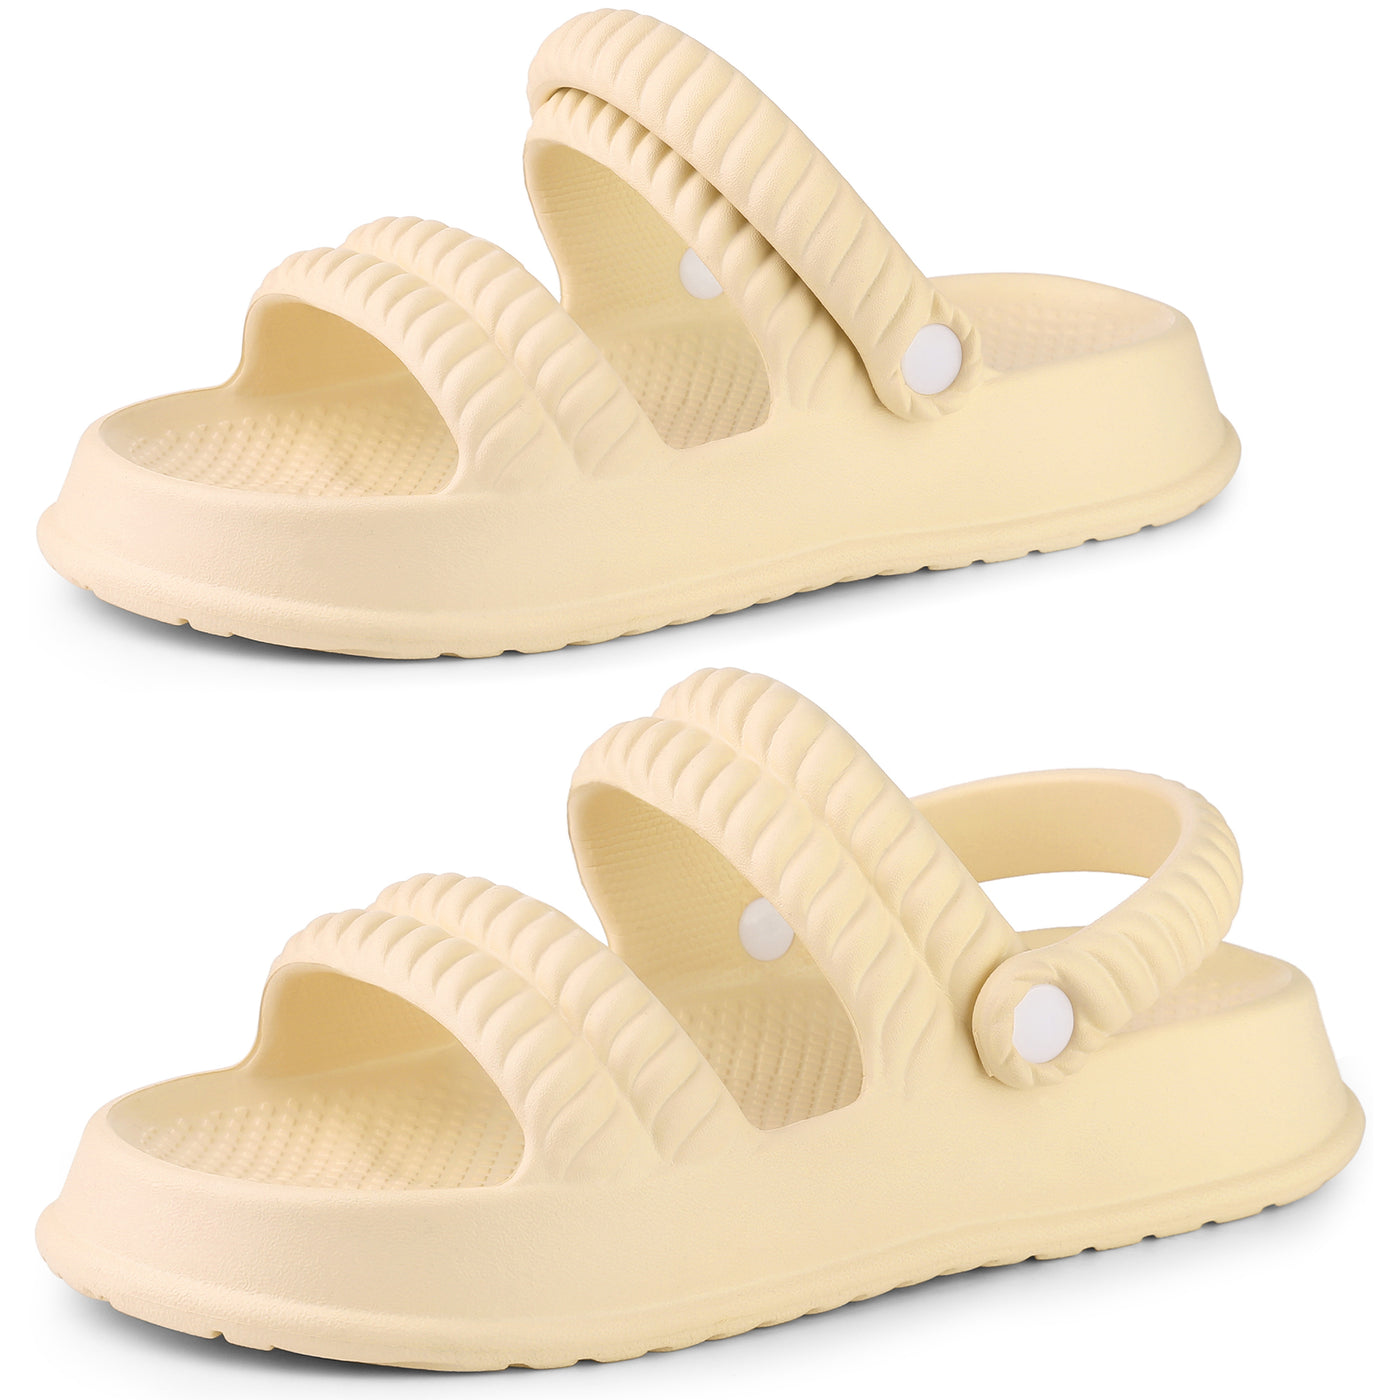 Allegra K Women's Slide Sandals Two-Way Wear Light Weight Slingback Flat Sandals